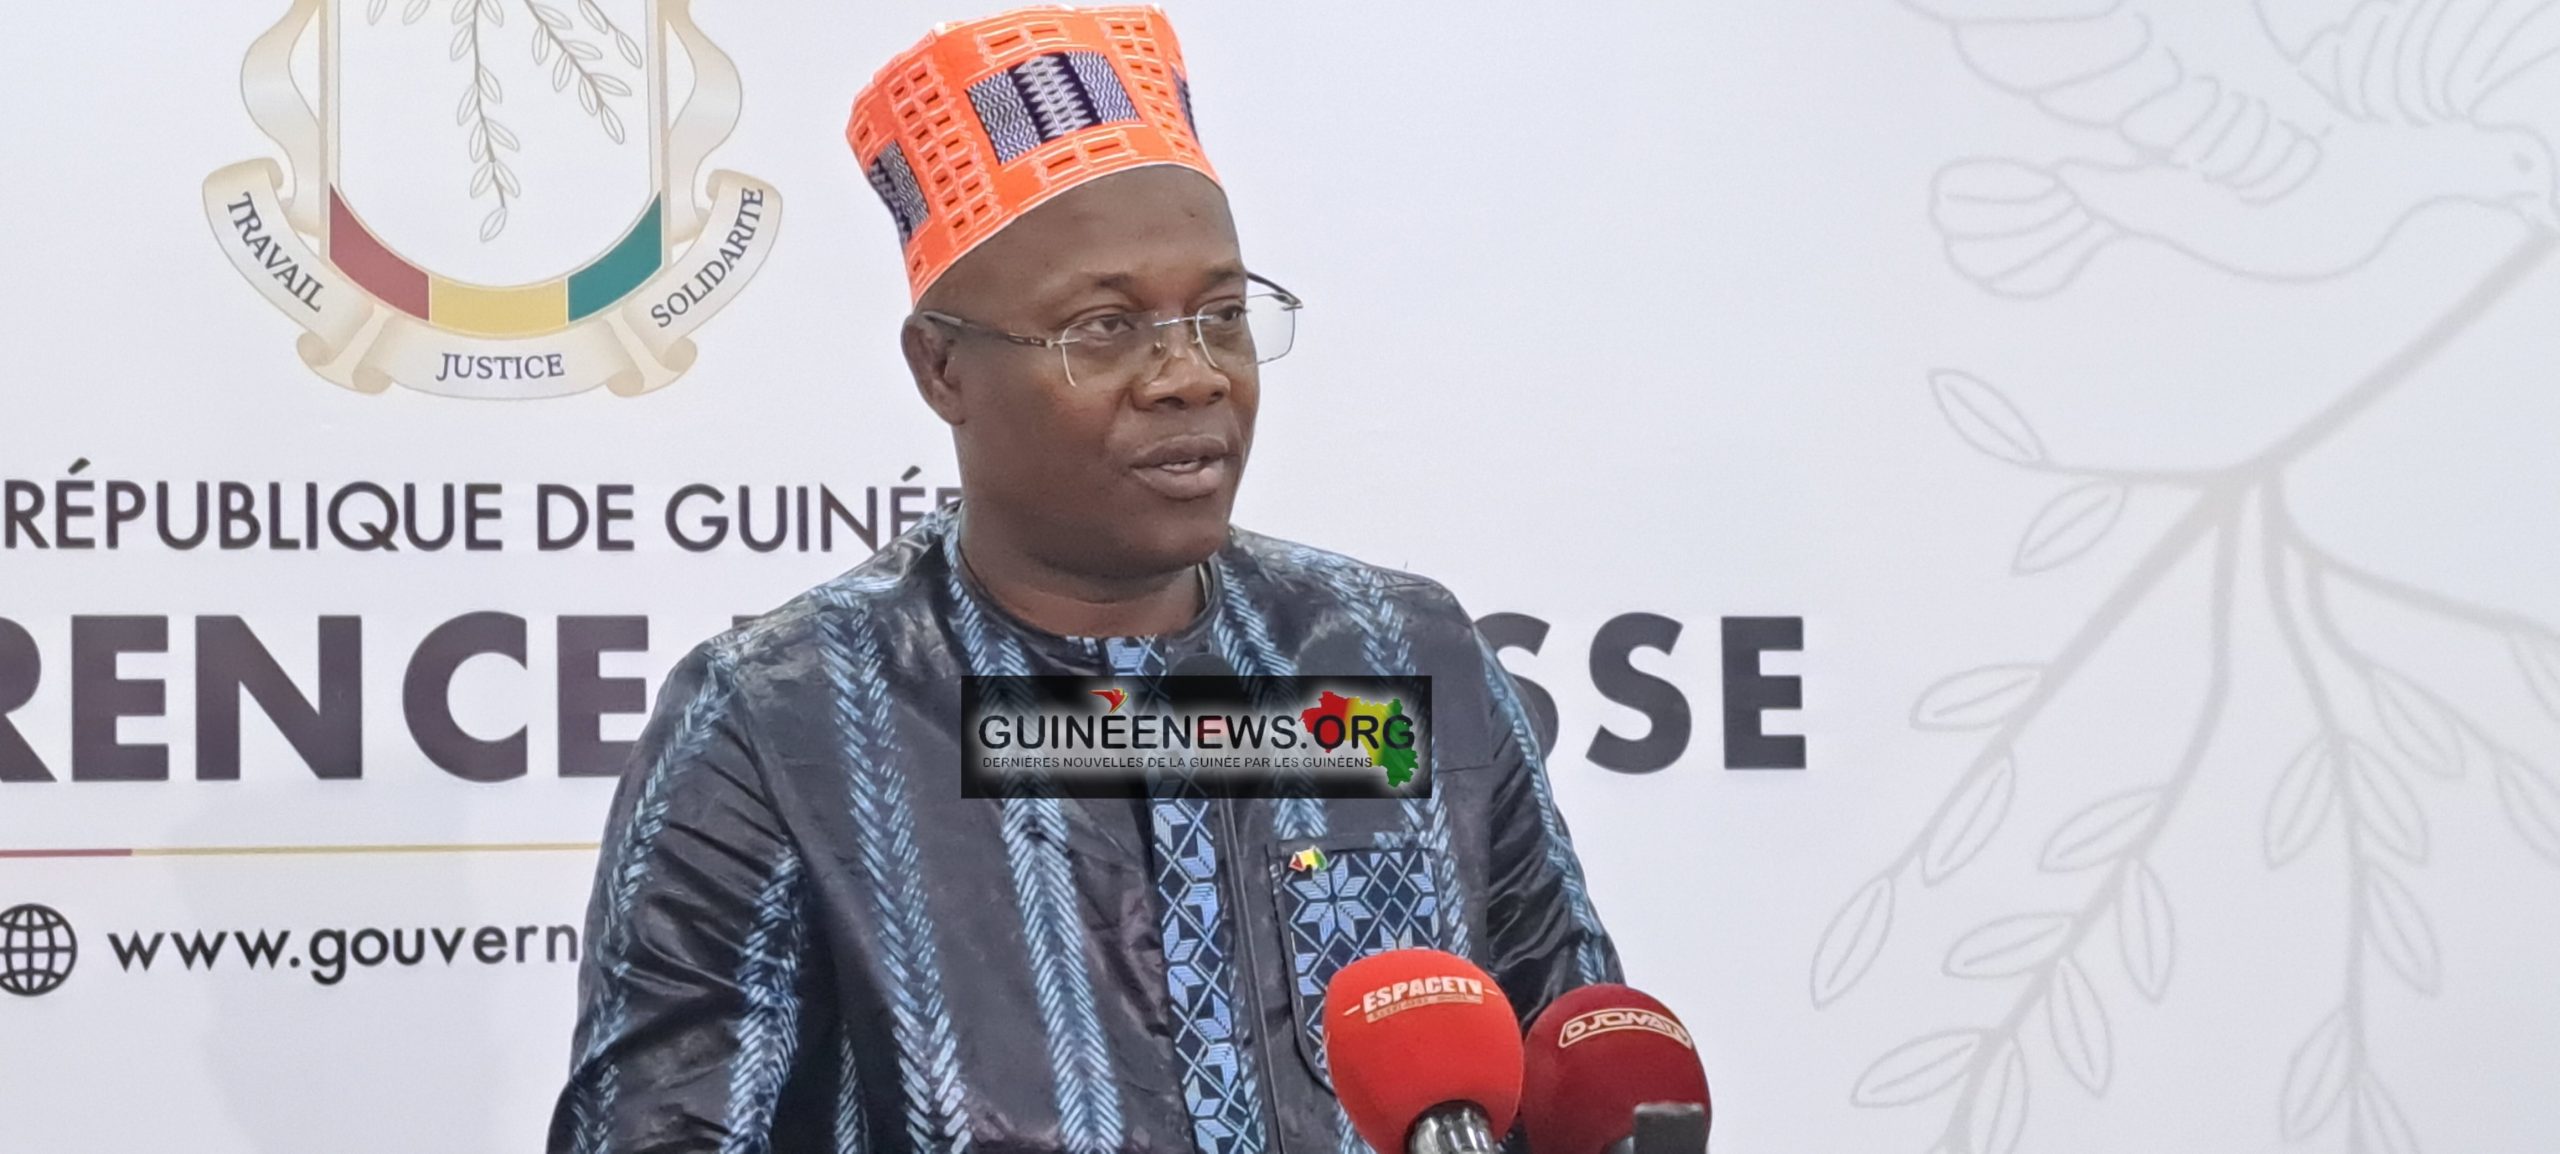 Contrôle des partis politiques : le ministre Mory Condé n’a rien inventé, réagit Ousmane Gaoual 